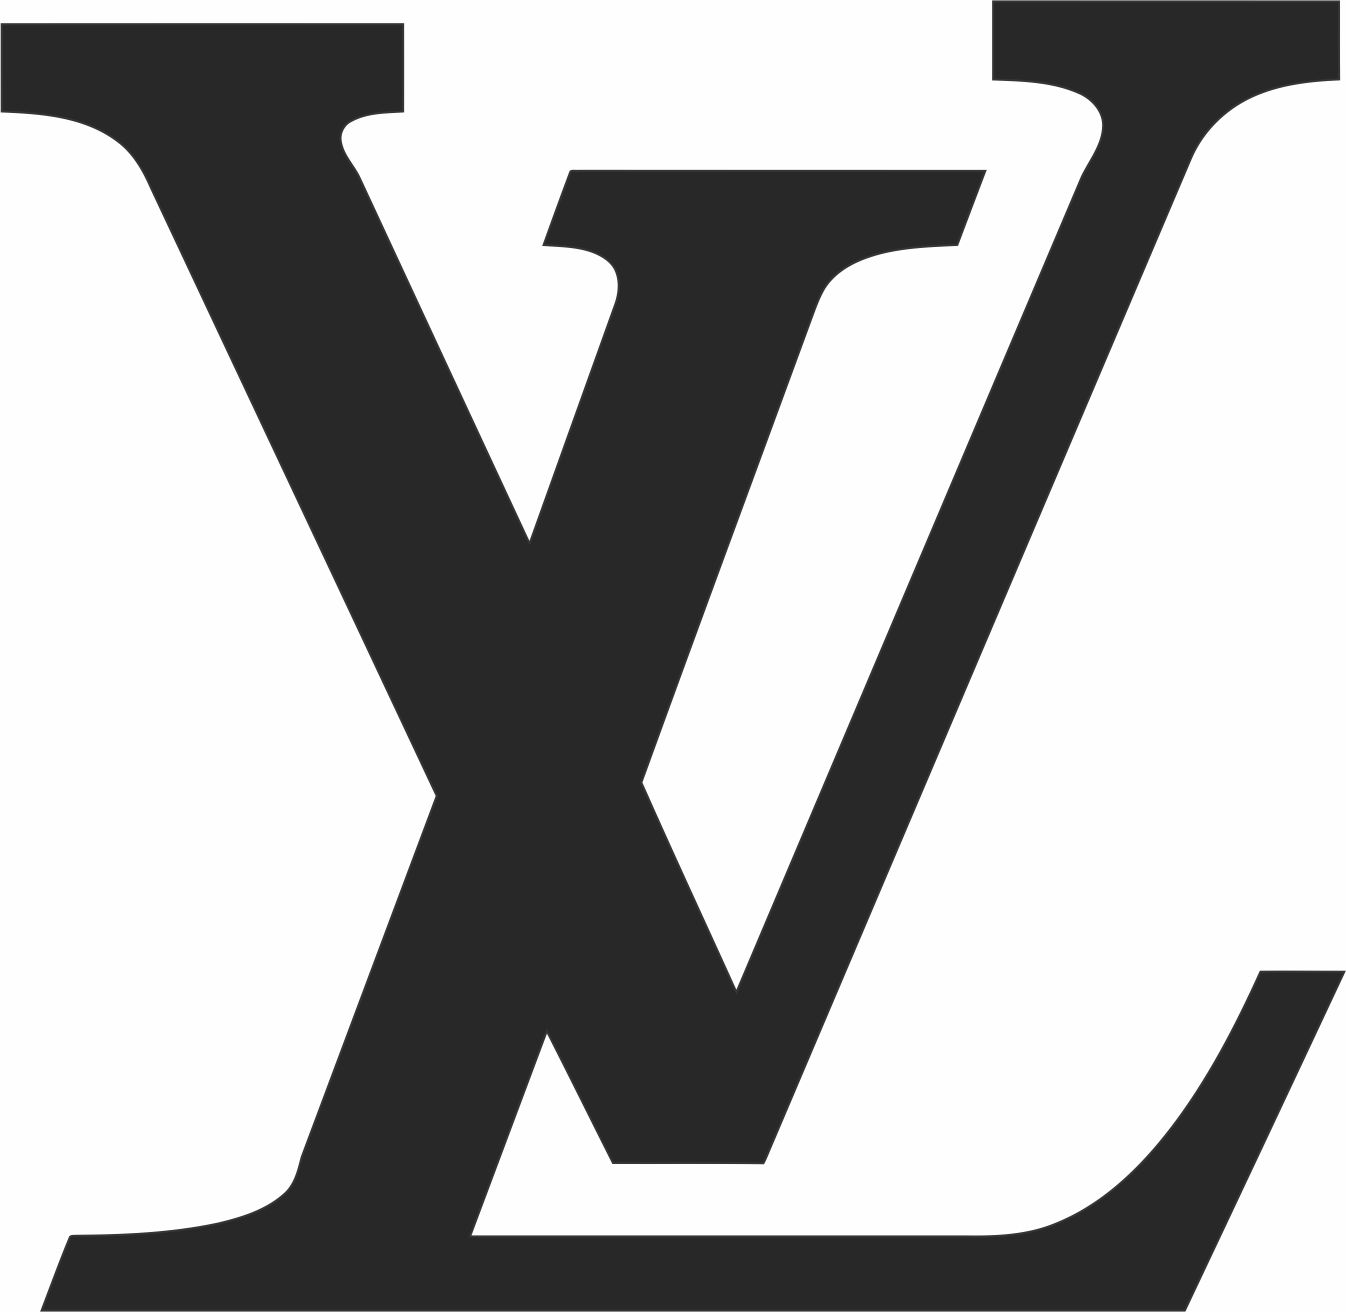 Louis Vuitton Monogram Pattern Svg - Download SVG Files for Cricut